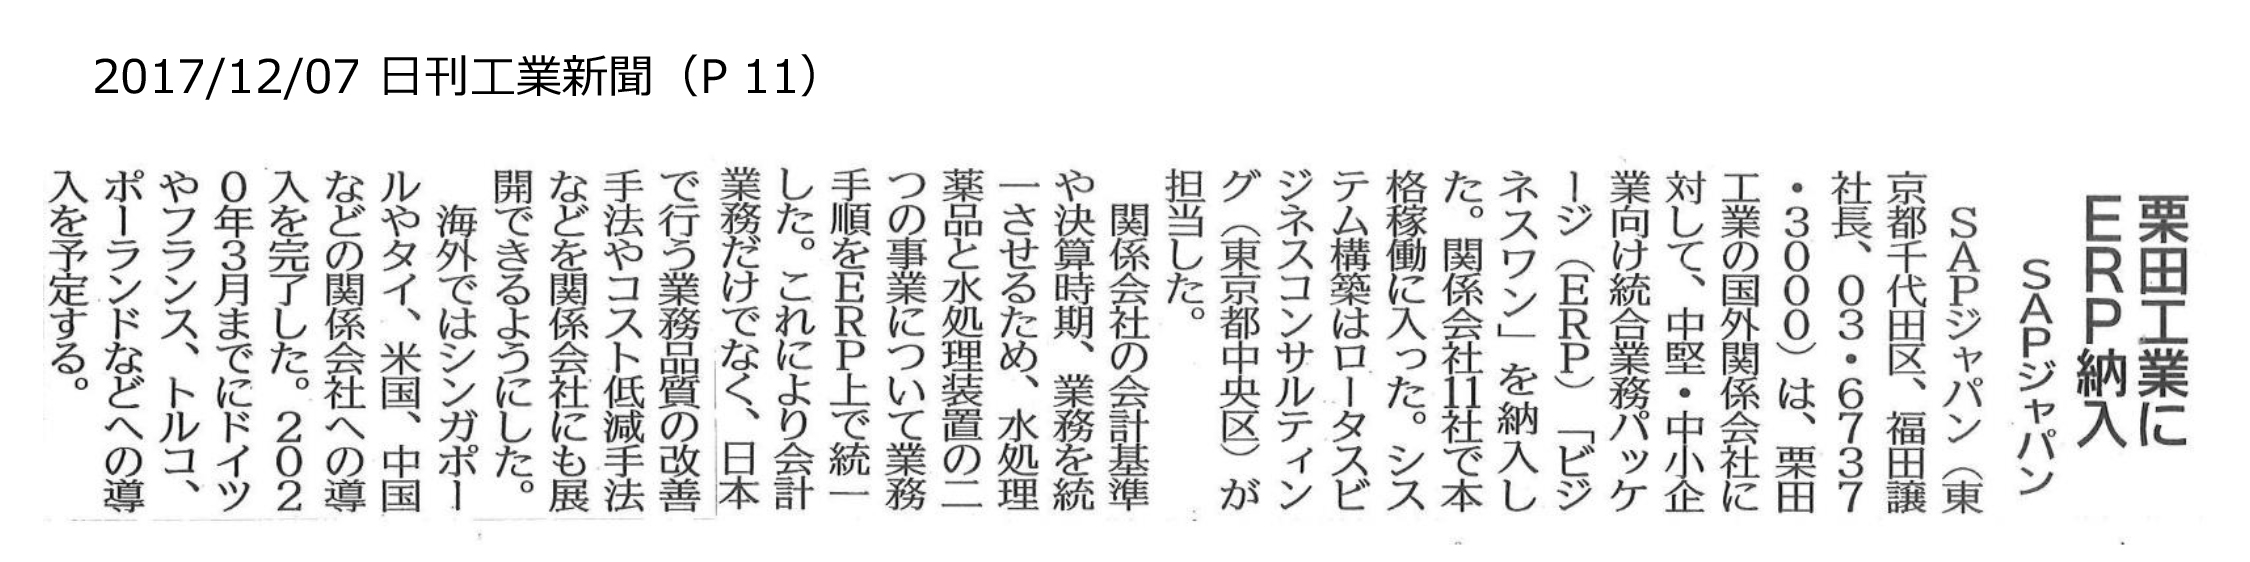 栗田工業株式会社様の記事が日刊工業新聞に掲載されました